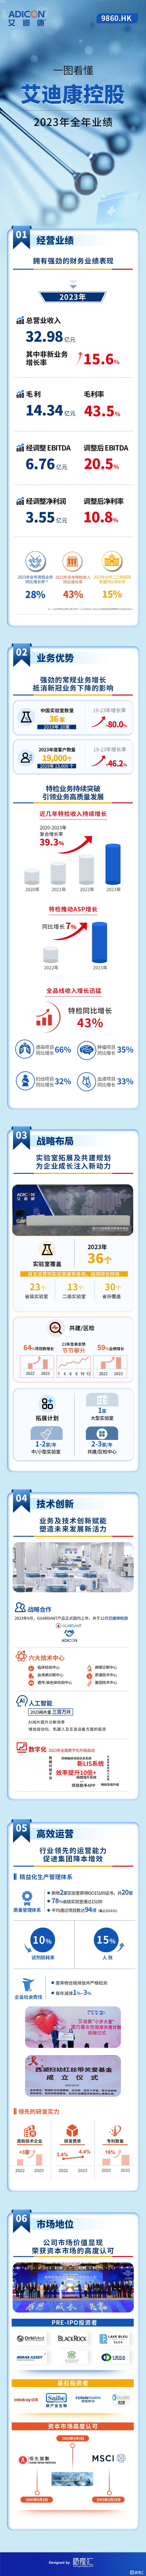 一图看懂艾迪康控股(9860.HK)2023年全年业绩